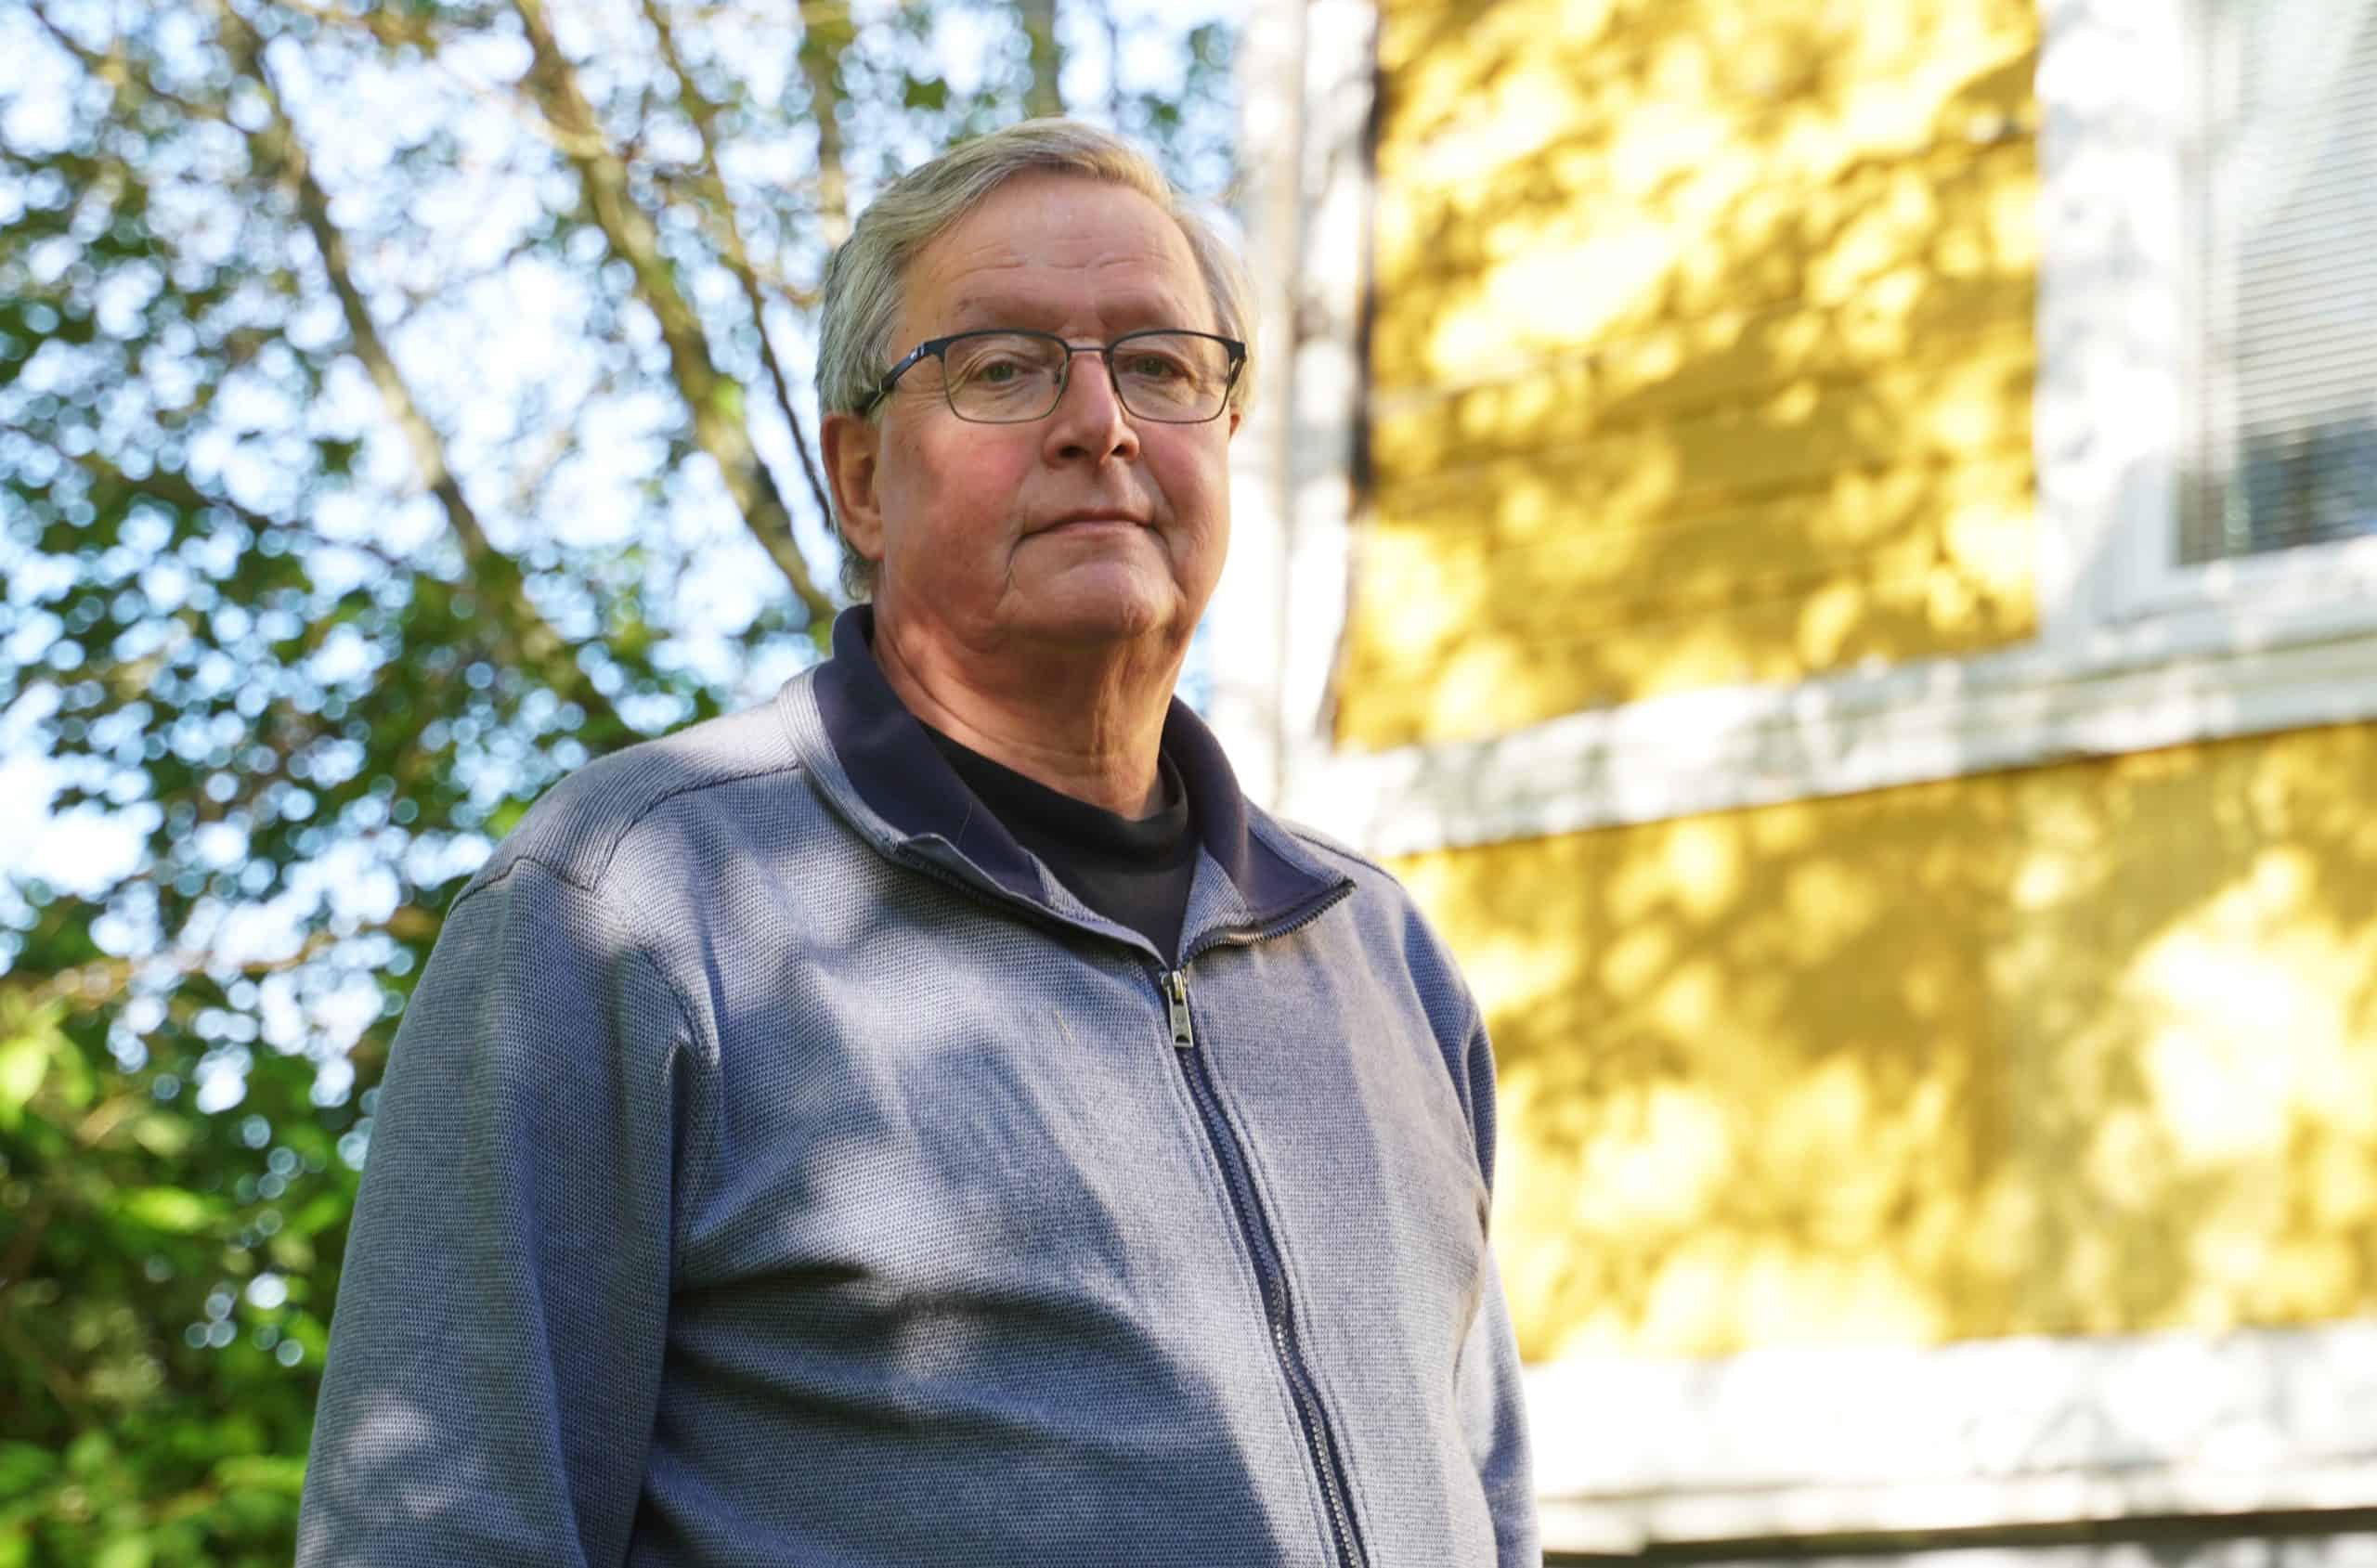 MTK Varsinais-Suomen Paavo Myllymäki jää pian eläkkeelle – takana lähes 40 vuoden ura maaseudun asioiden parissa